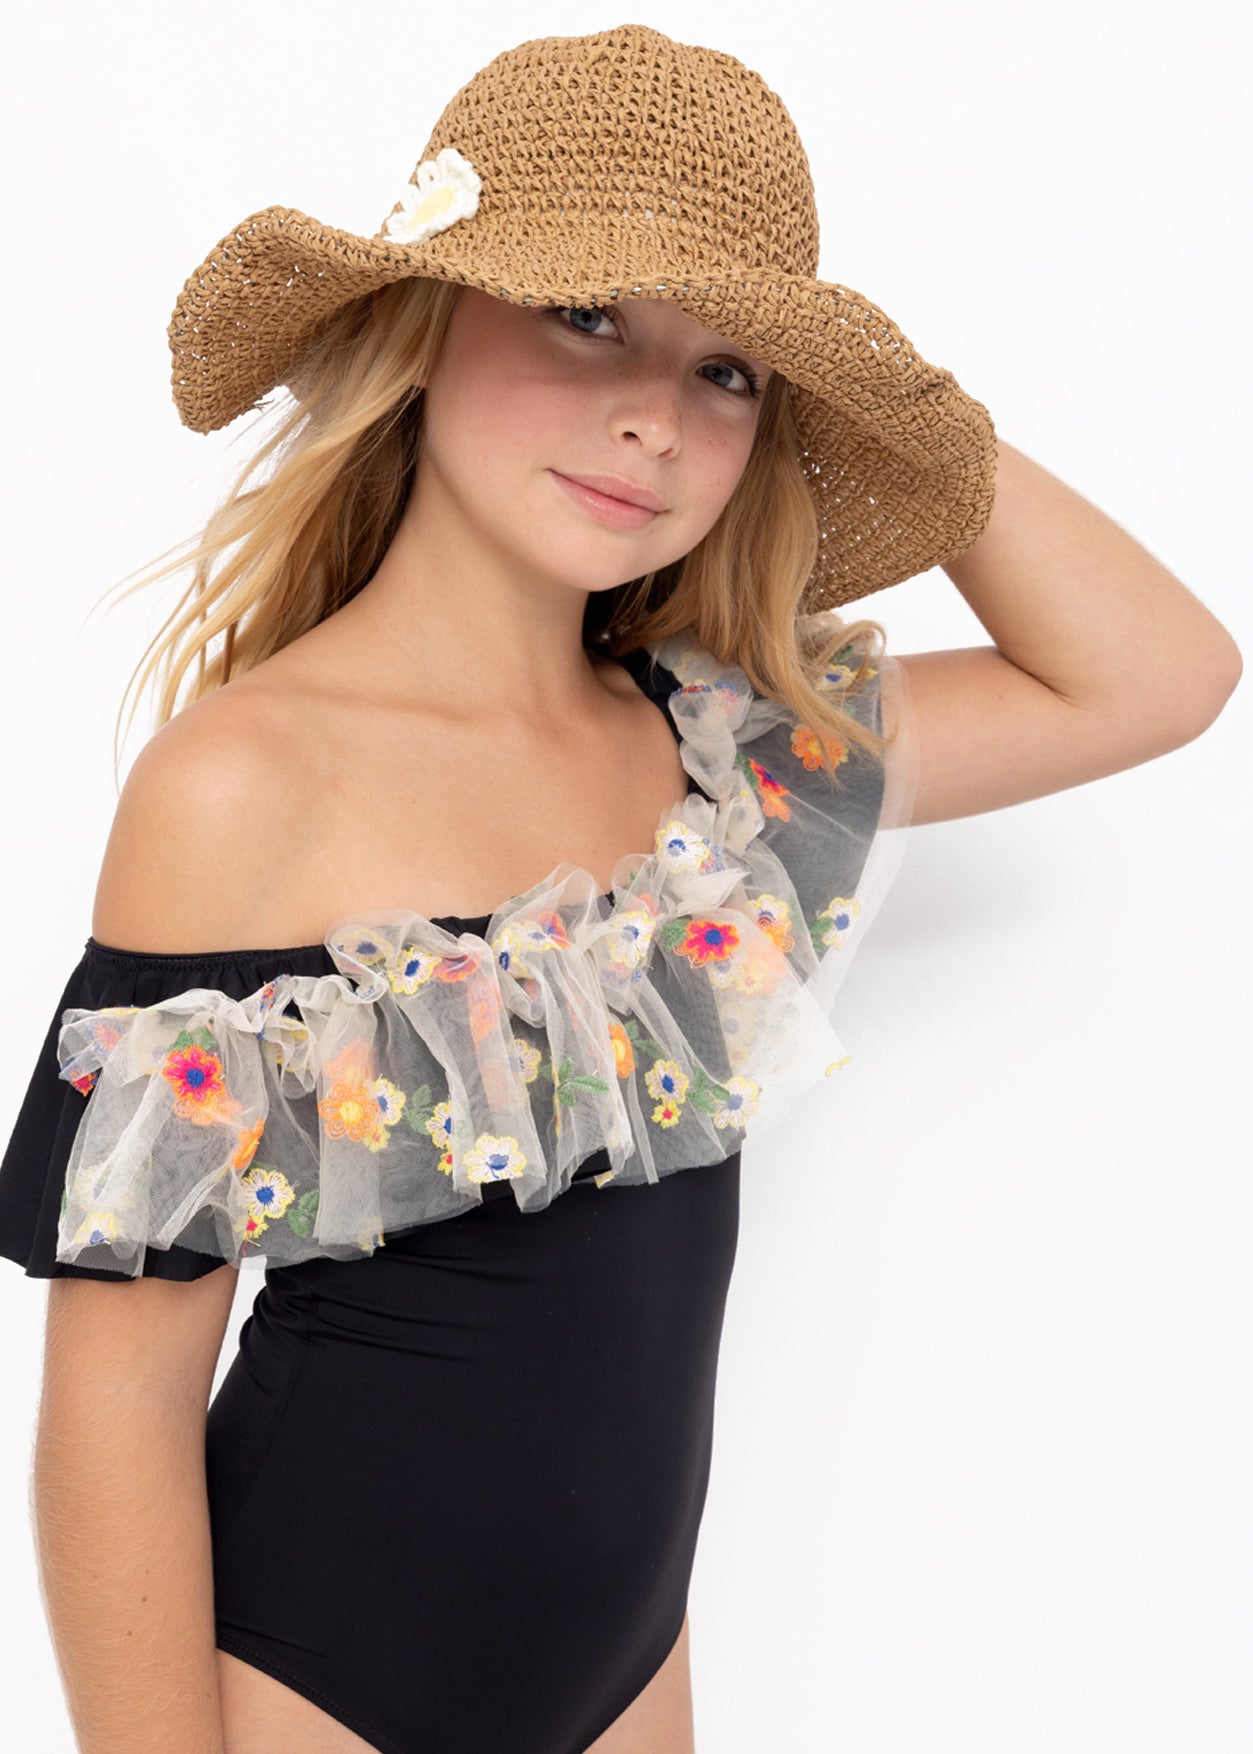 beachwear for girls, beach hats for girls